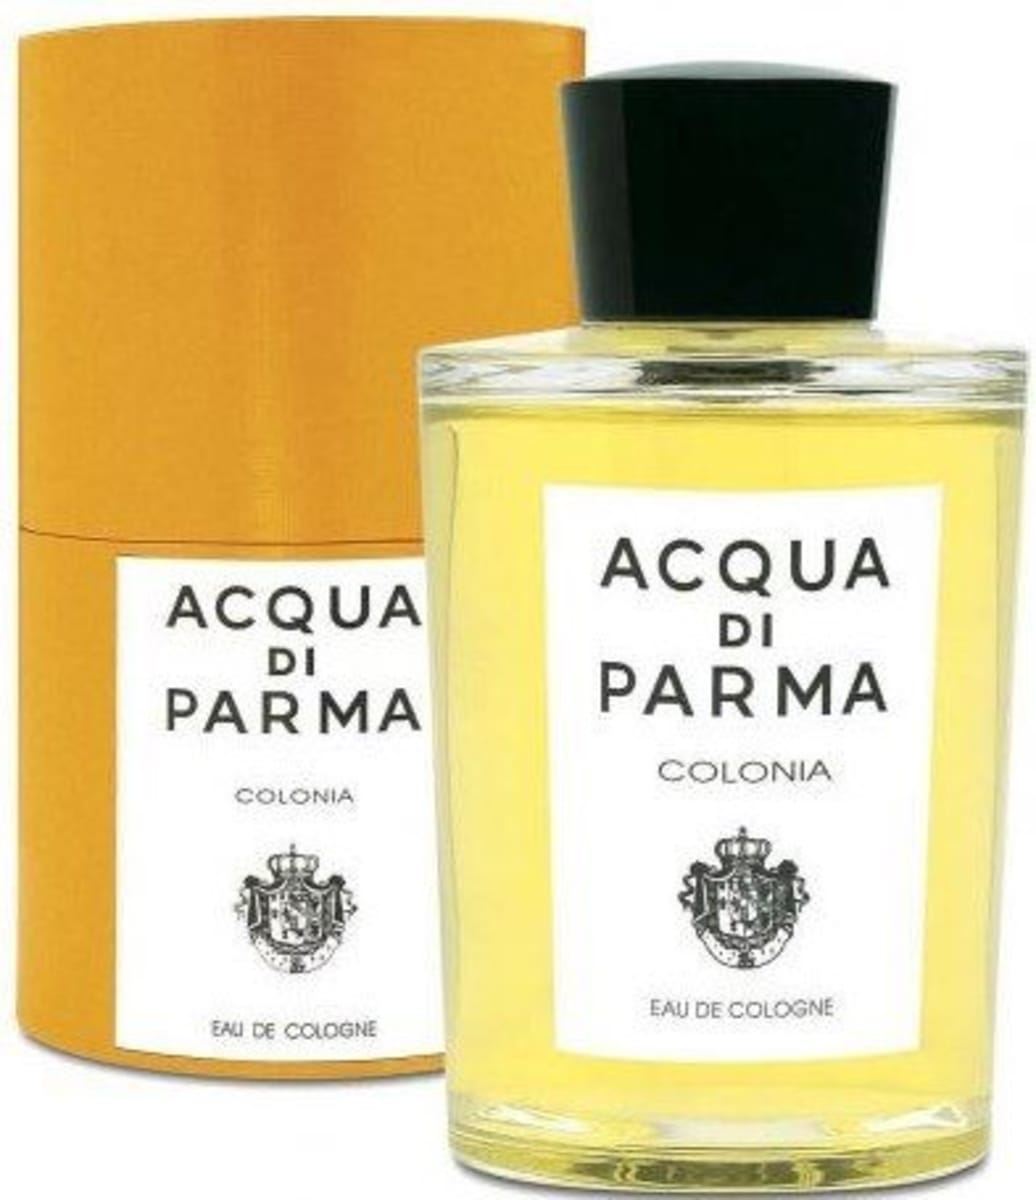 Acqua Di Parma Colonia Cologne Spray 3.4 oz Unisex Fragrance 8028713000096